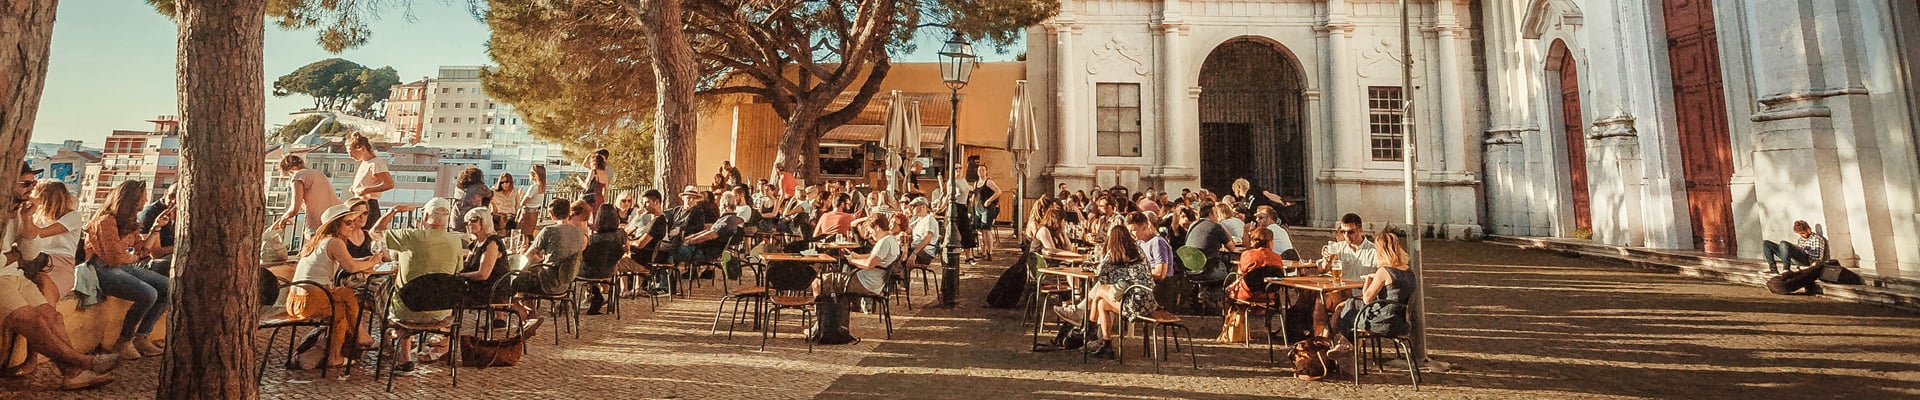 Alfama, which is Lisbon's Oldest Neighborhood 